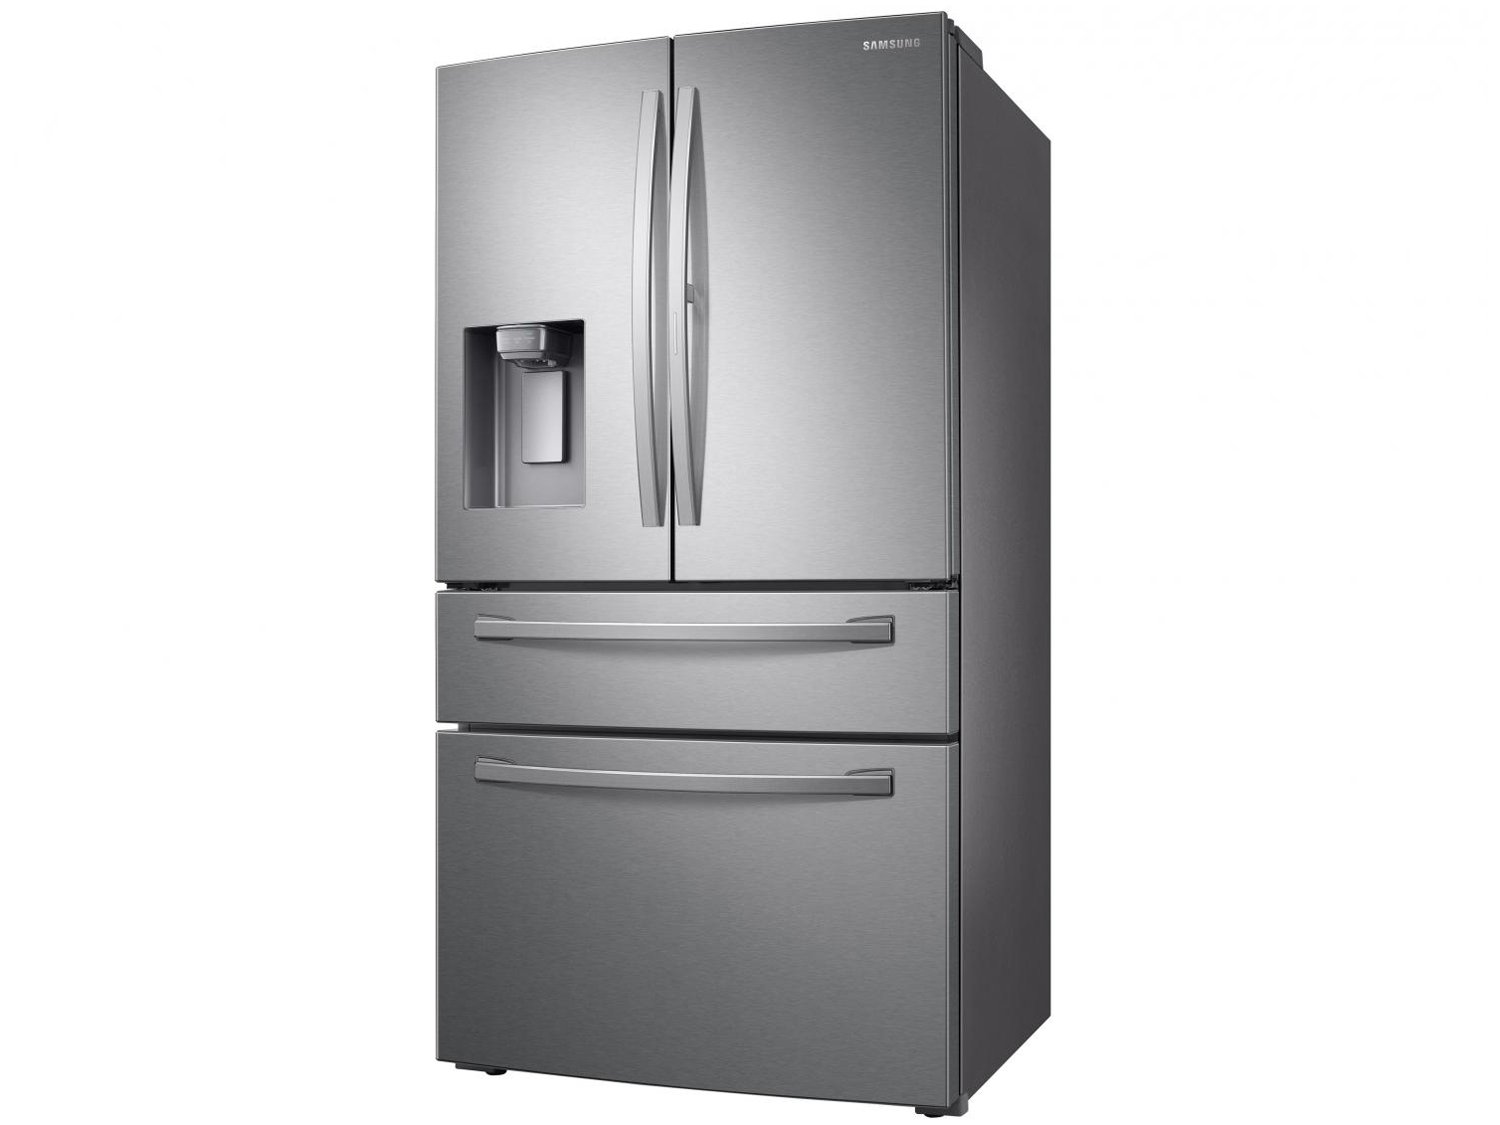 Refrigerador Samsung French Door RF22R7351SR com Food Showcase e Gaveta FlexZone Inox - 501L - 220v - 4